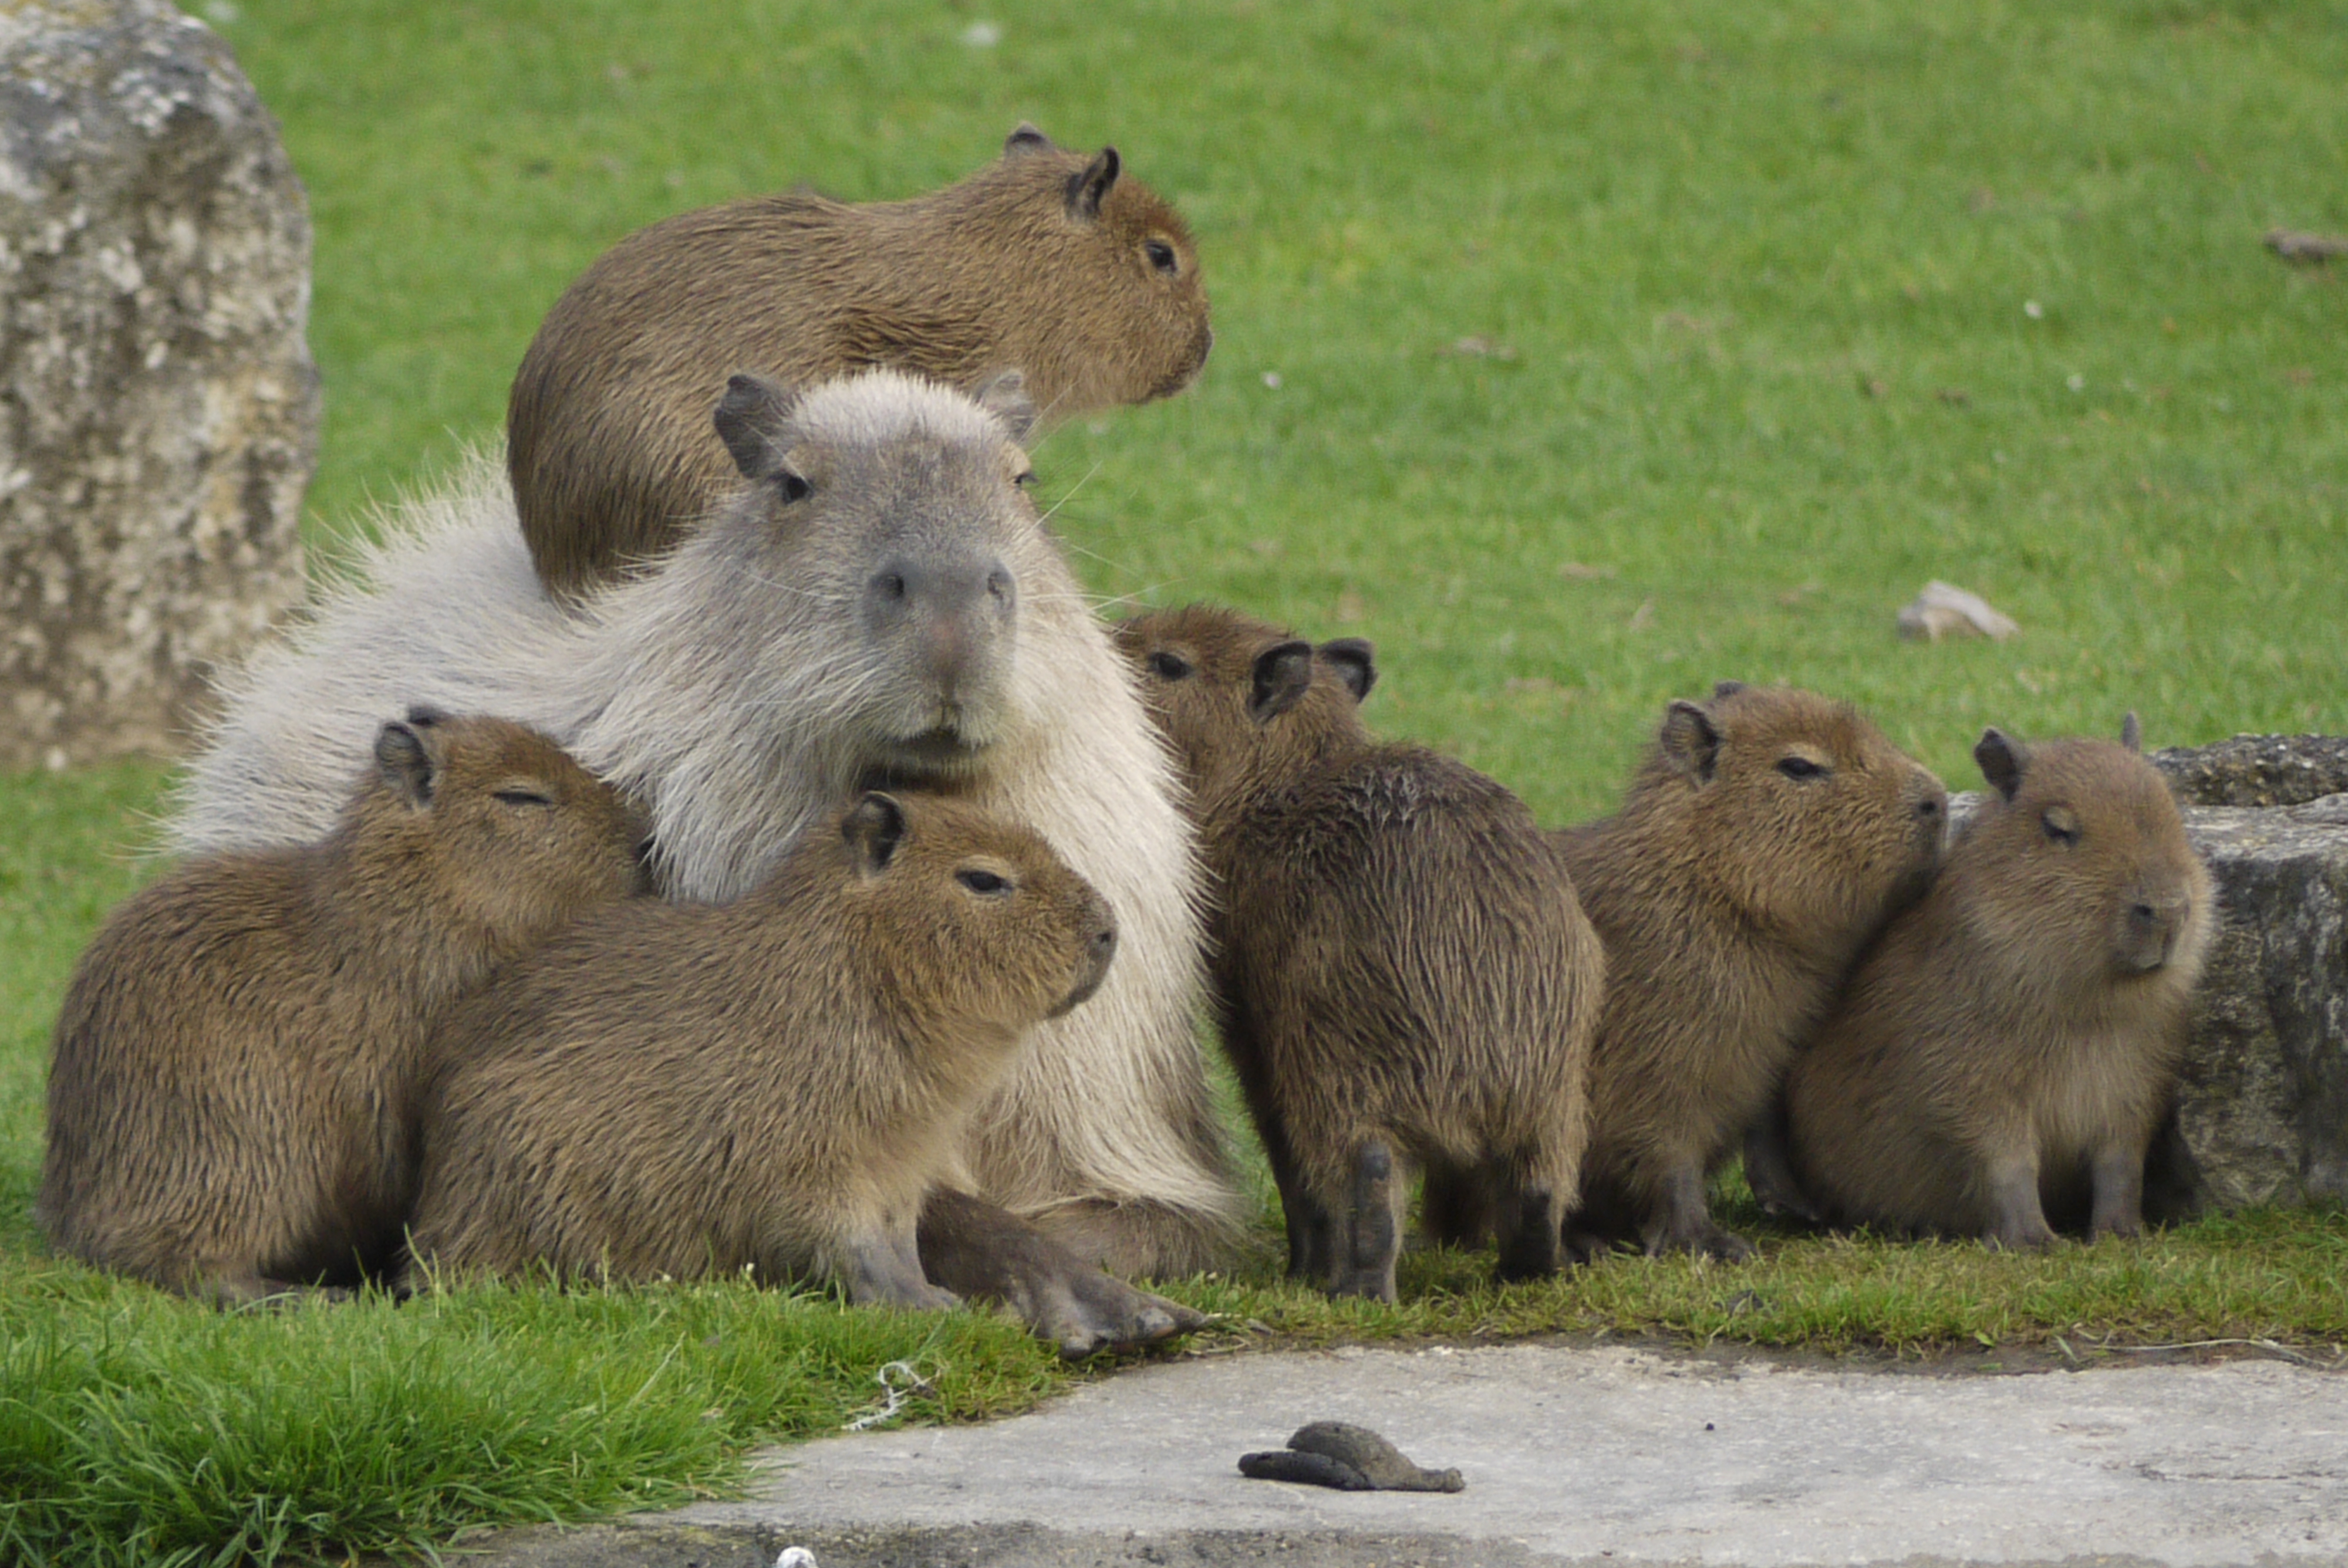 Capybara HD wallpapers, Desktop wallpaper - most viewed